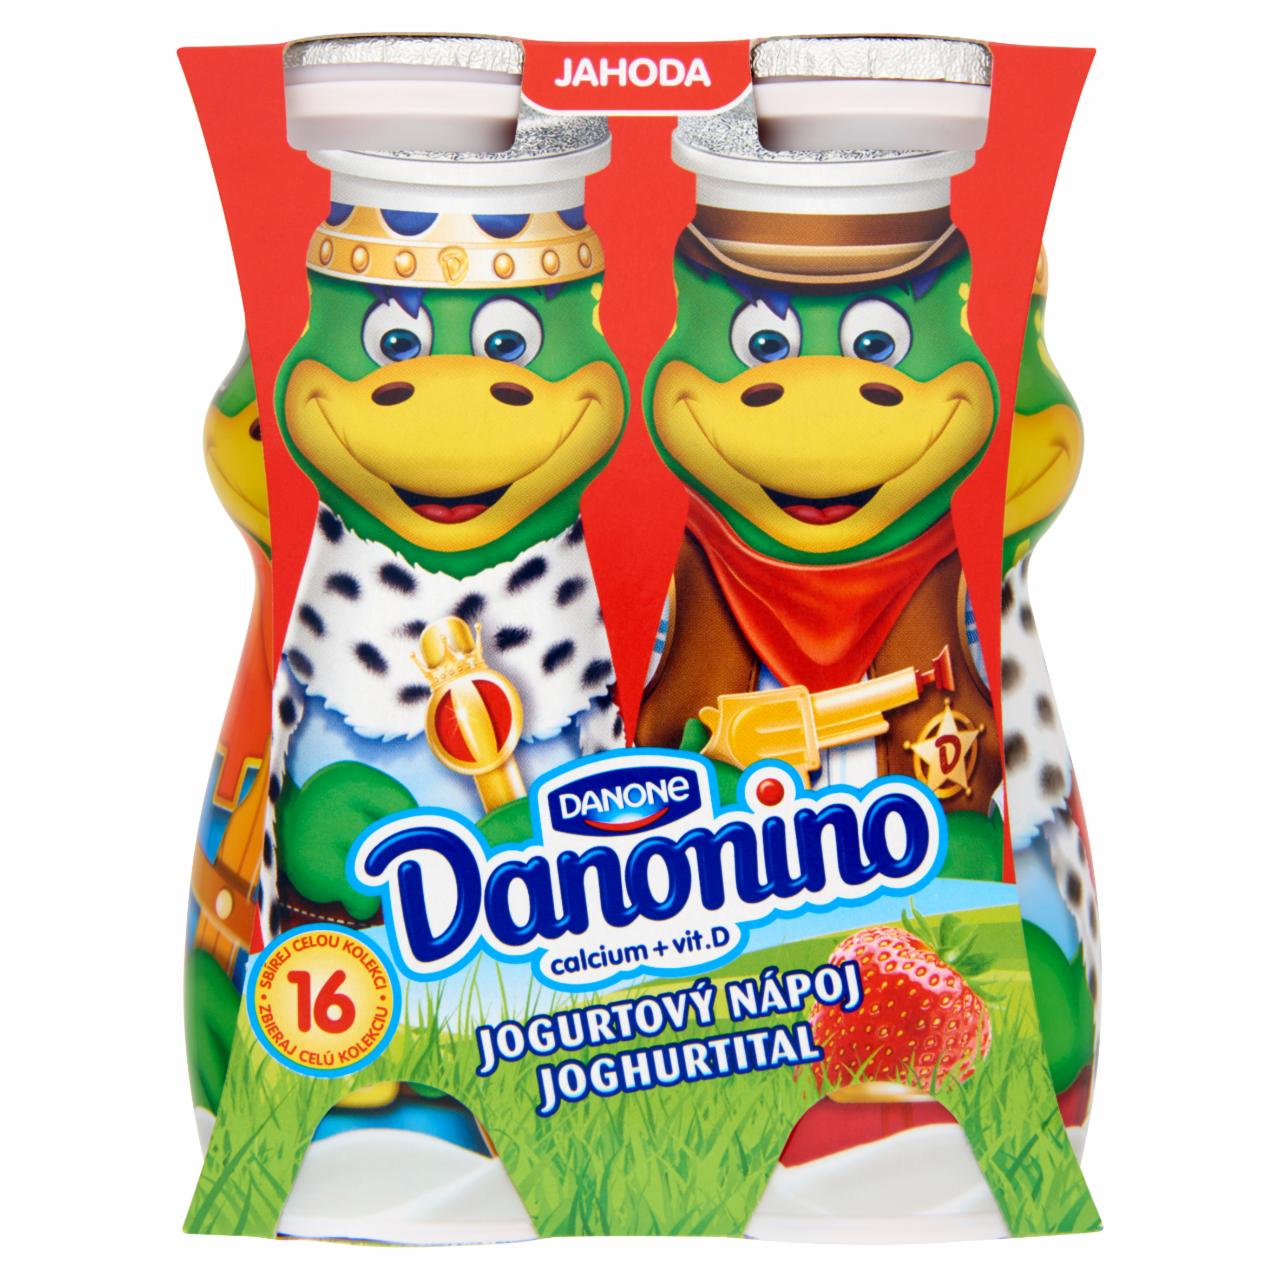 Képek - Danone Danonino zsírszegény, élőflórás, eperízű joghurtital kalciummal és D-vitaminnal 4 x 100 g